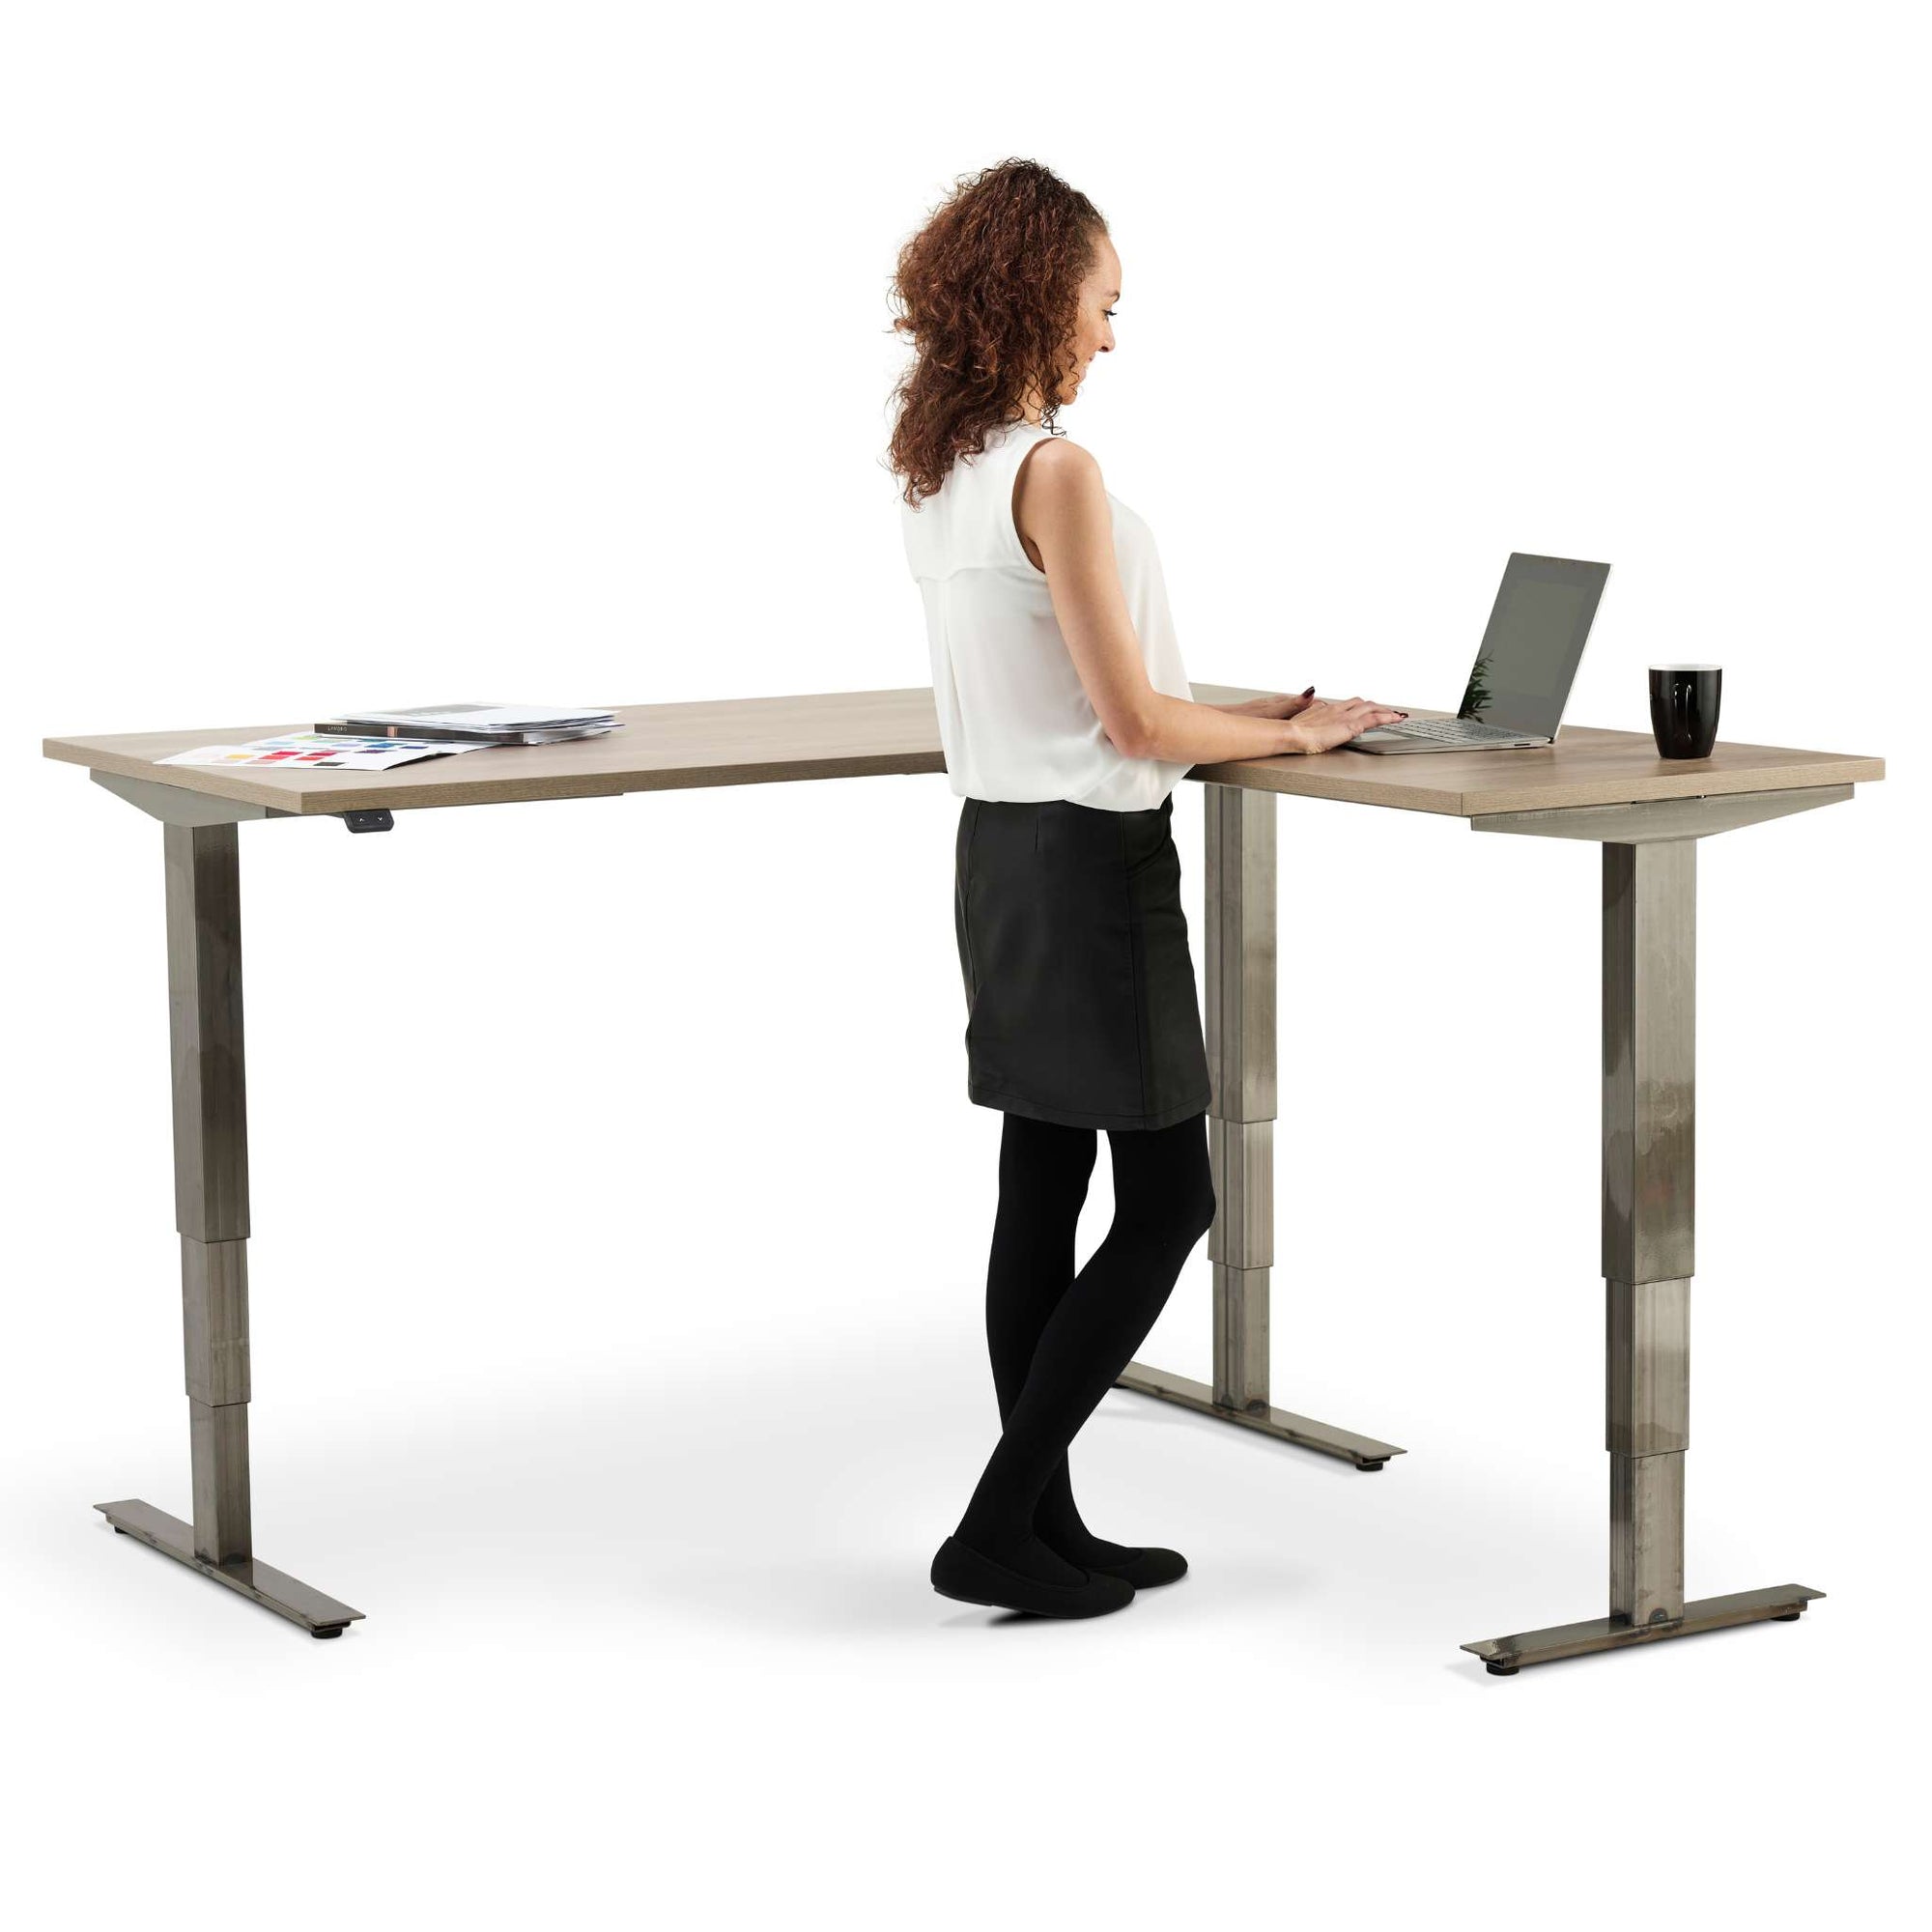 Smyth standing corner desk in use